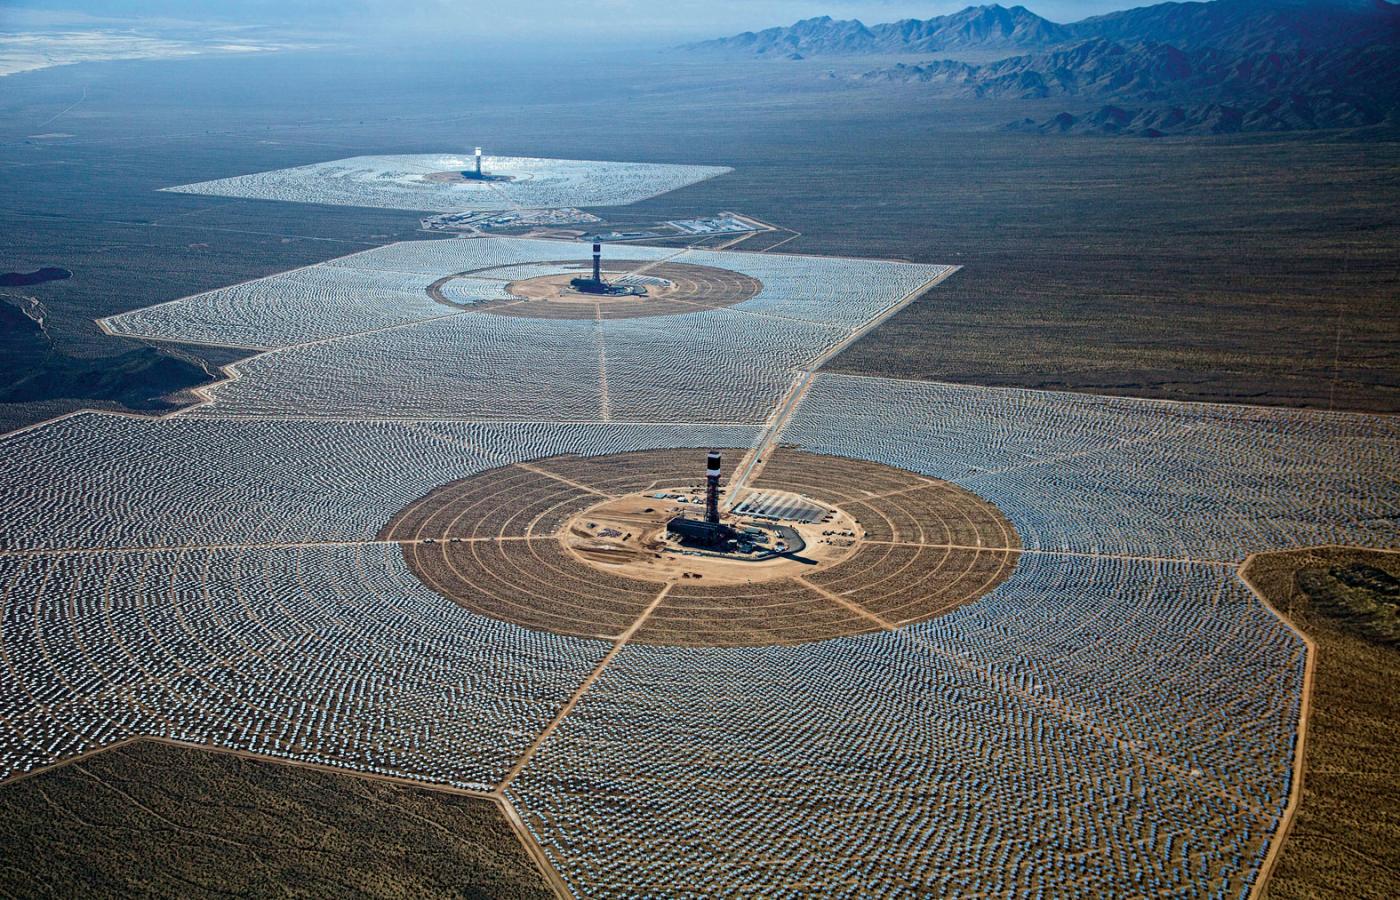 Zabójcze morze luster termalnej elektrowni słonecznej Ivanpah Solar Plant w Kalifornii.